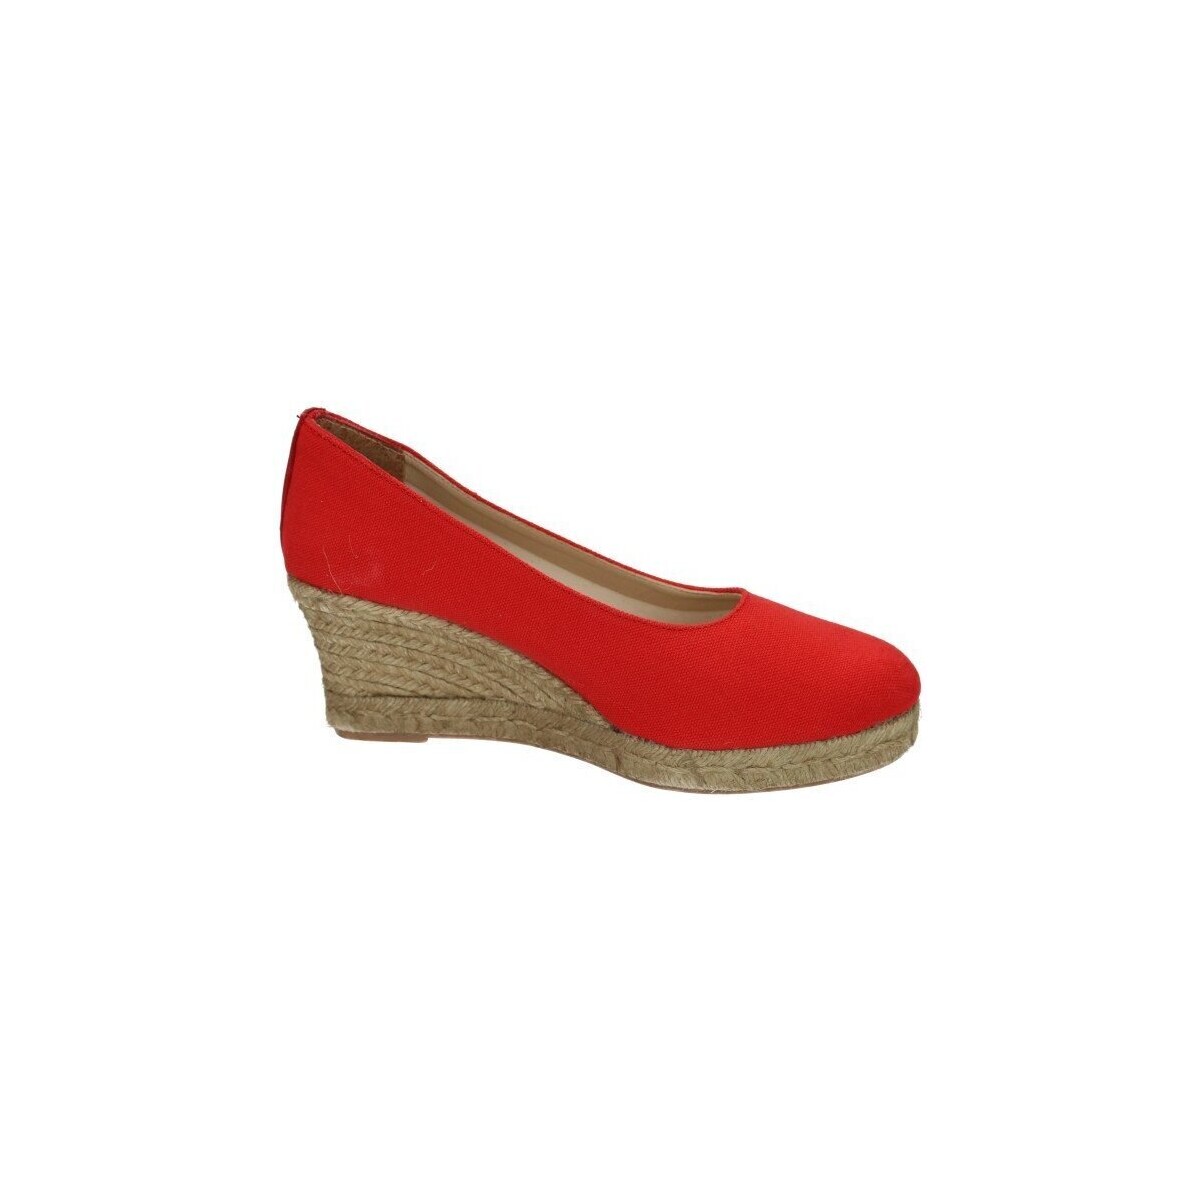 Zapatos Mujer Senderismo Torres Zapatos cuÑa esparto Rojo